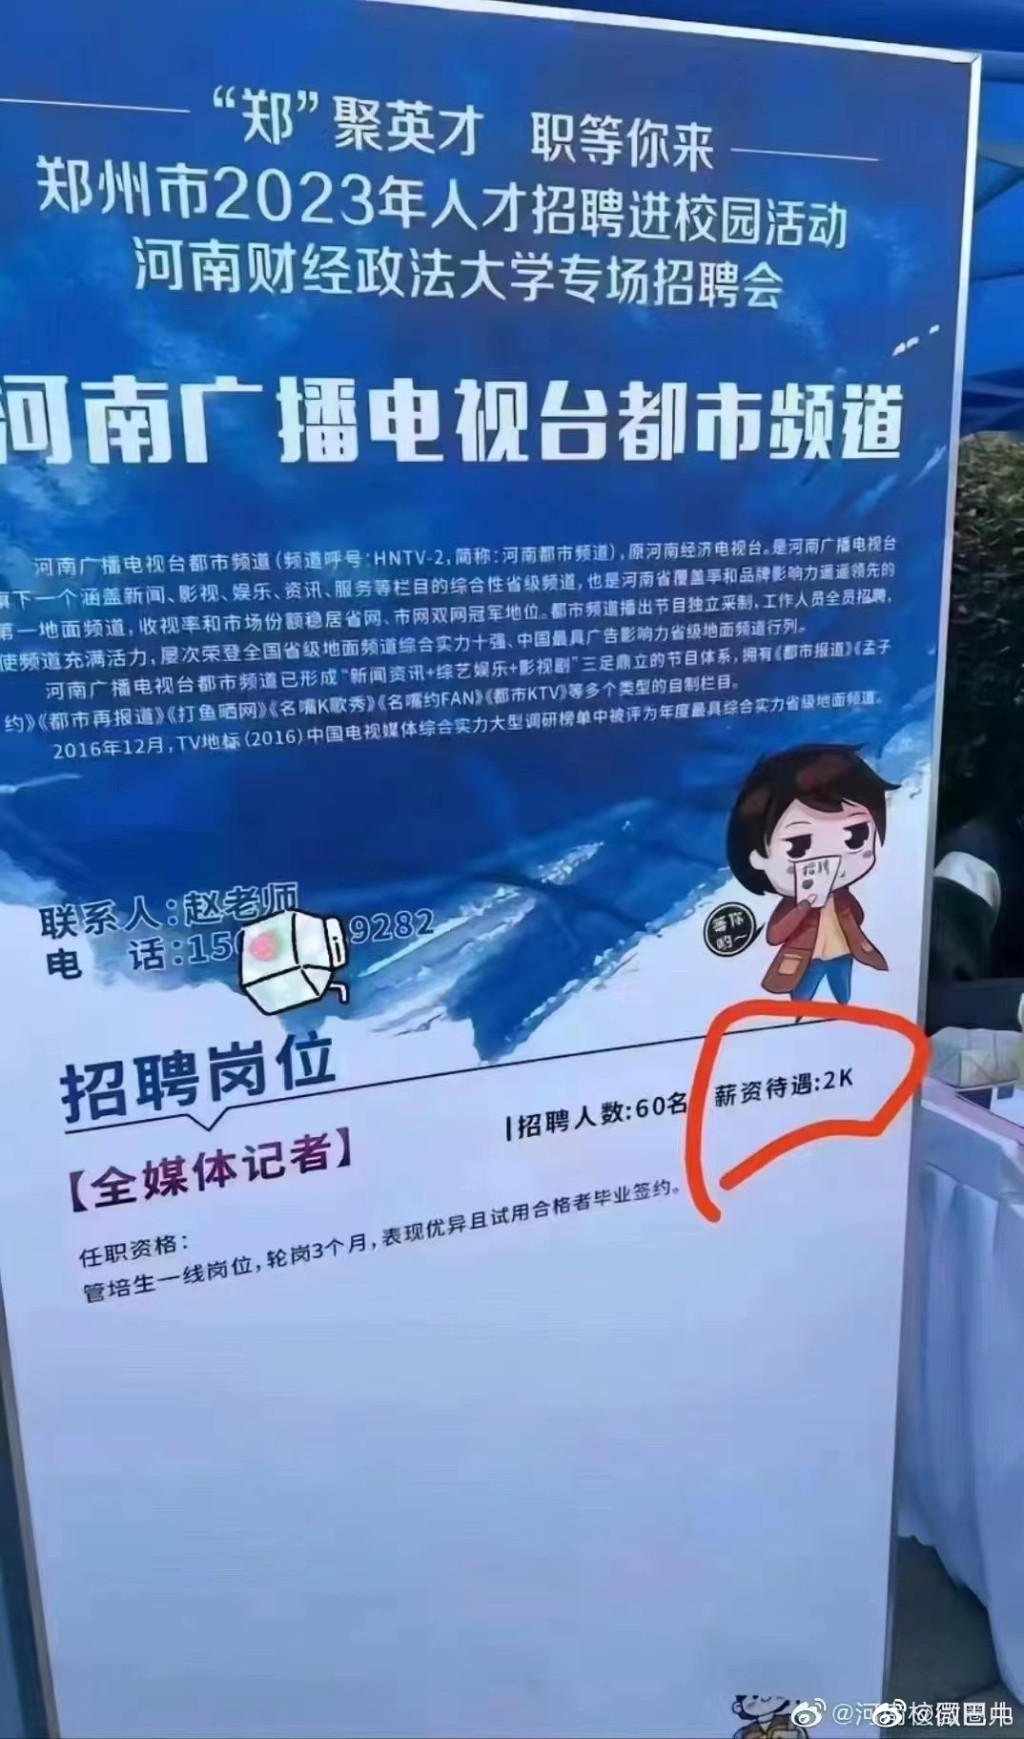 河南媒体聘记者薪金为2000元。 微博图